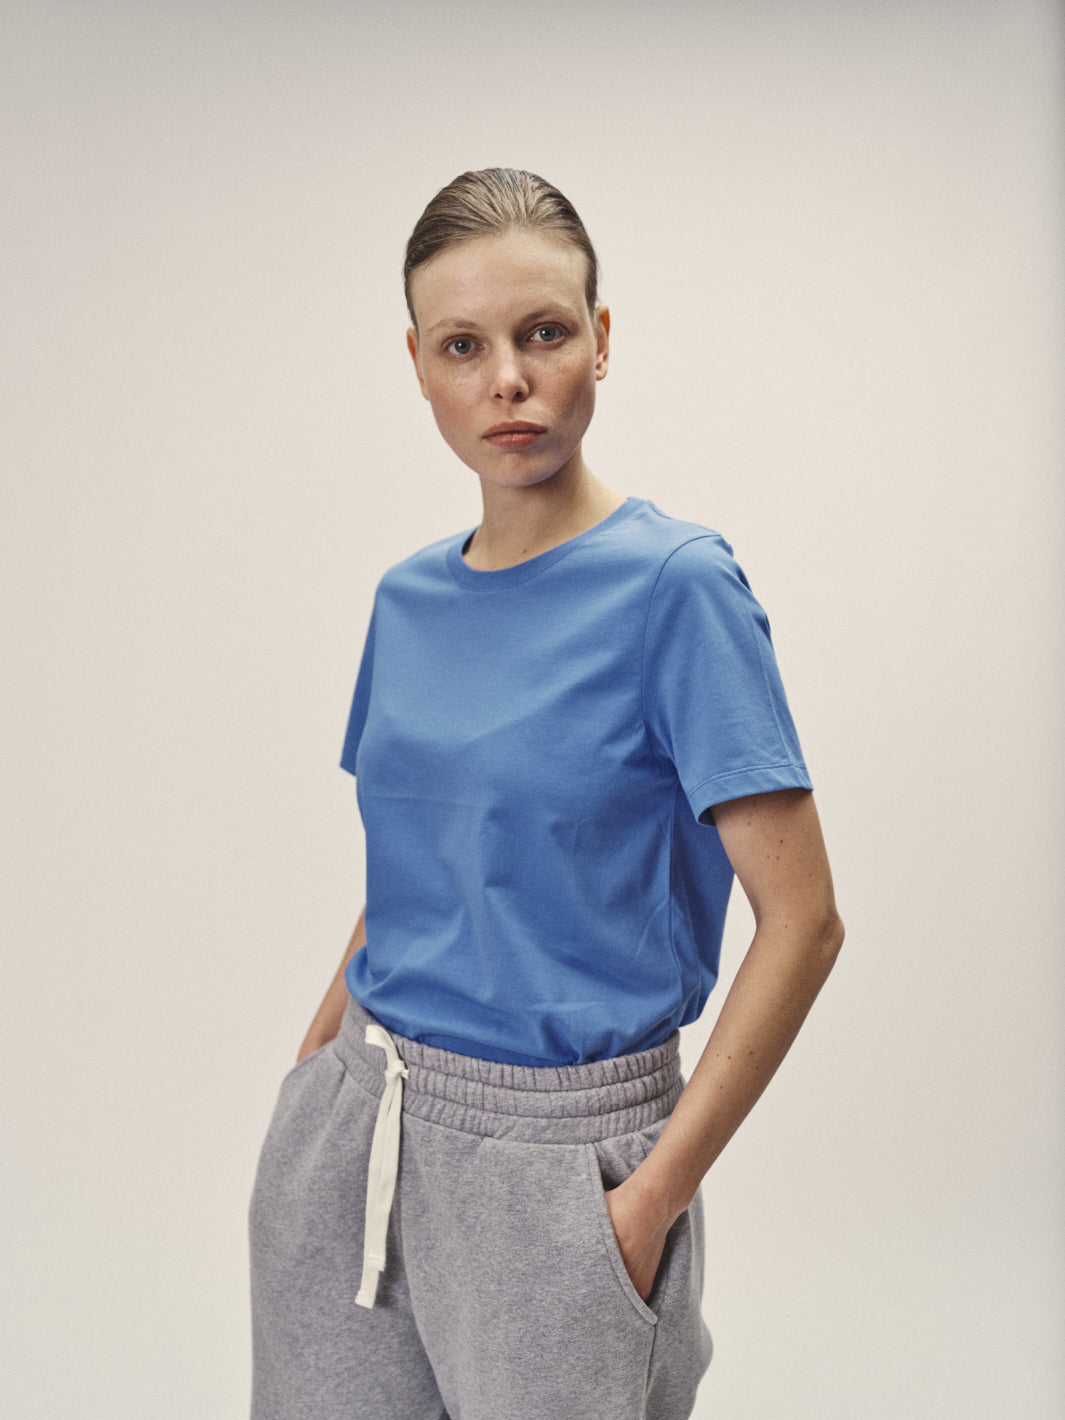 Damen Rundhals T-Shirt reine Bio Baumwolle blau in Portugal produziert